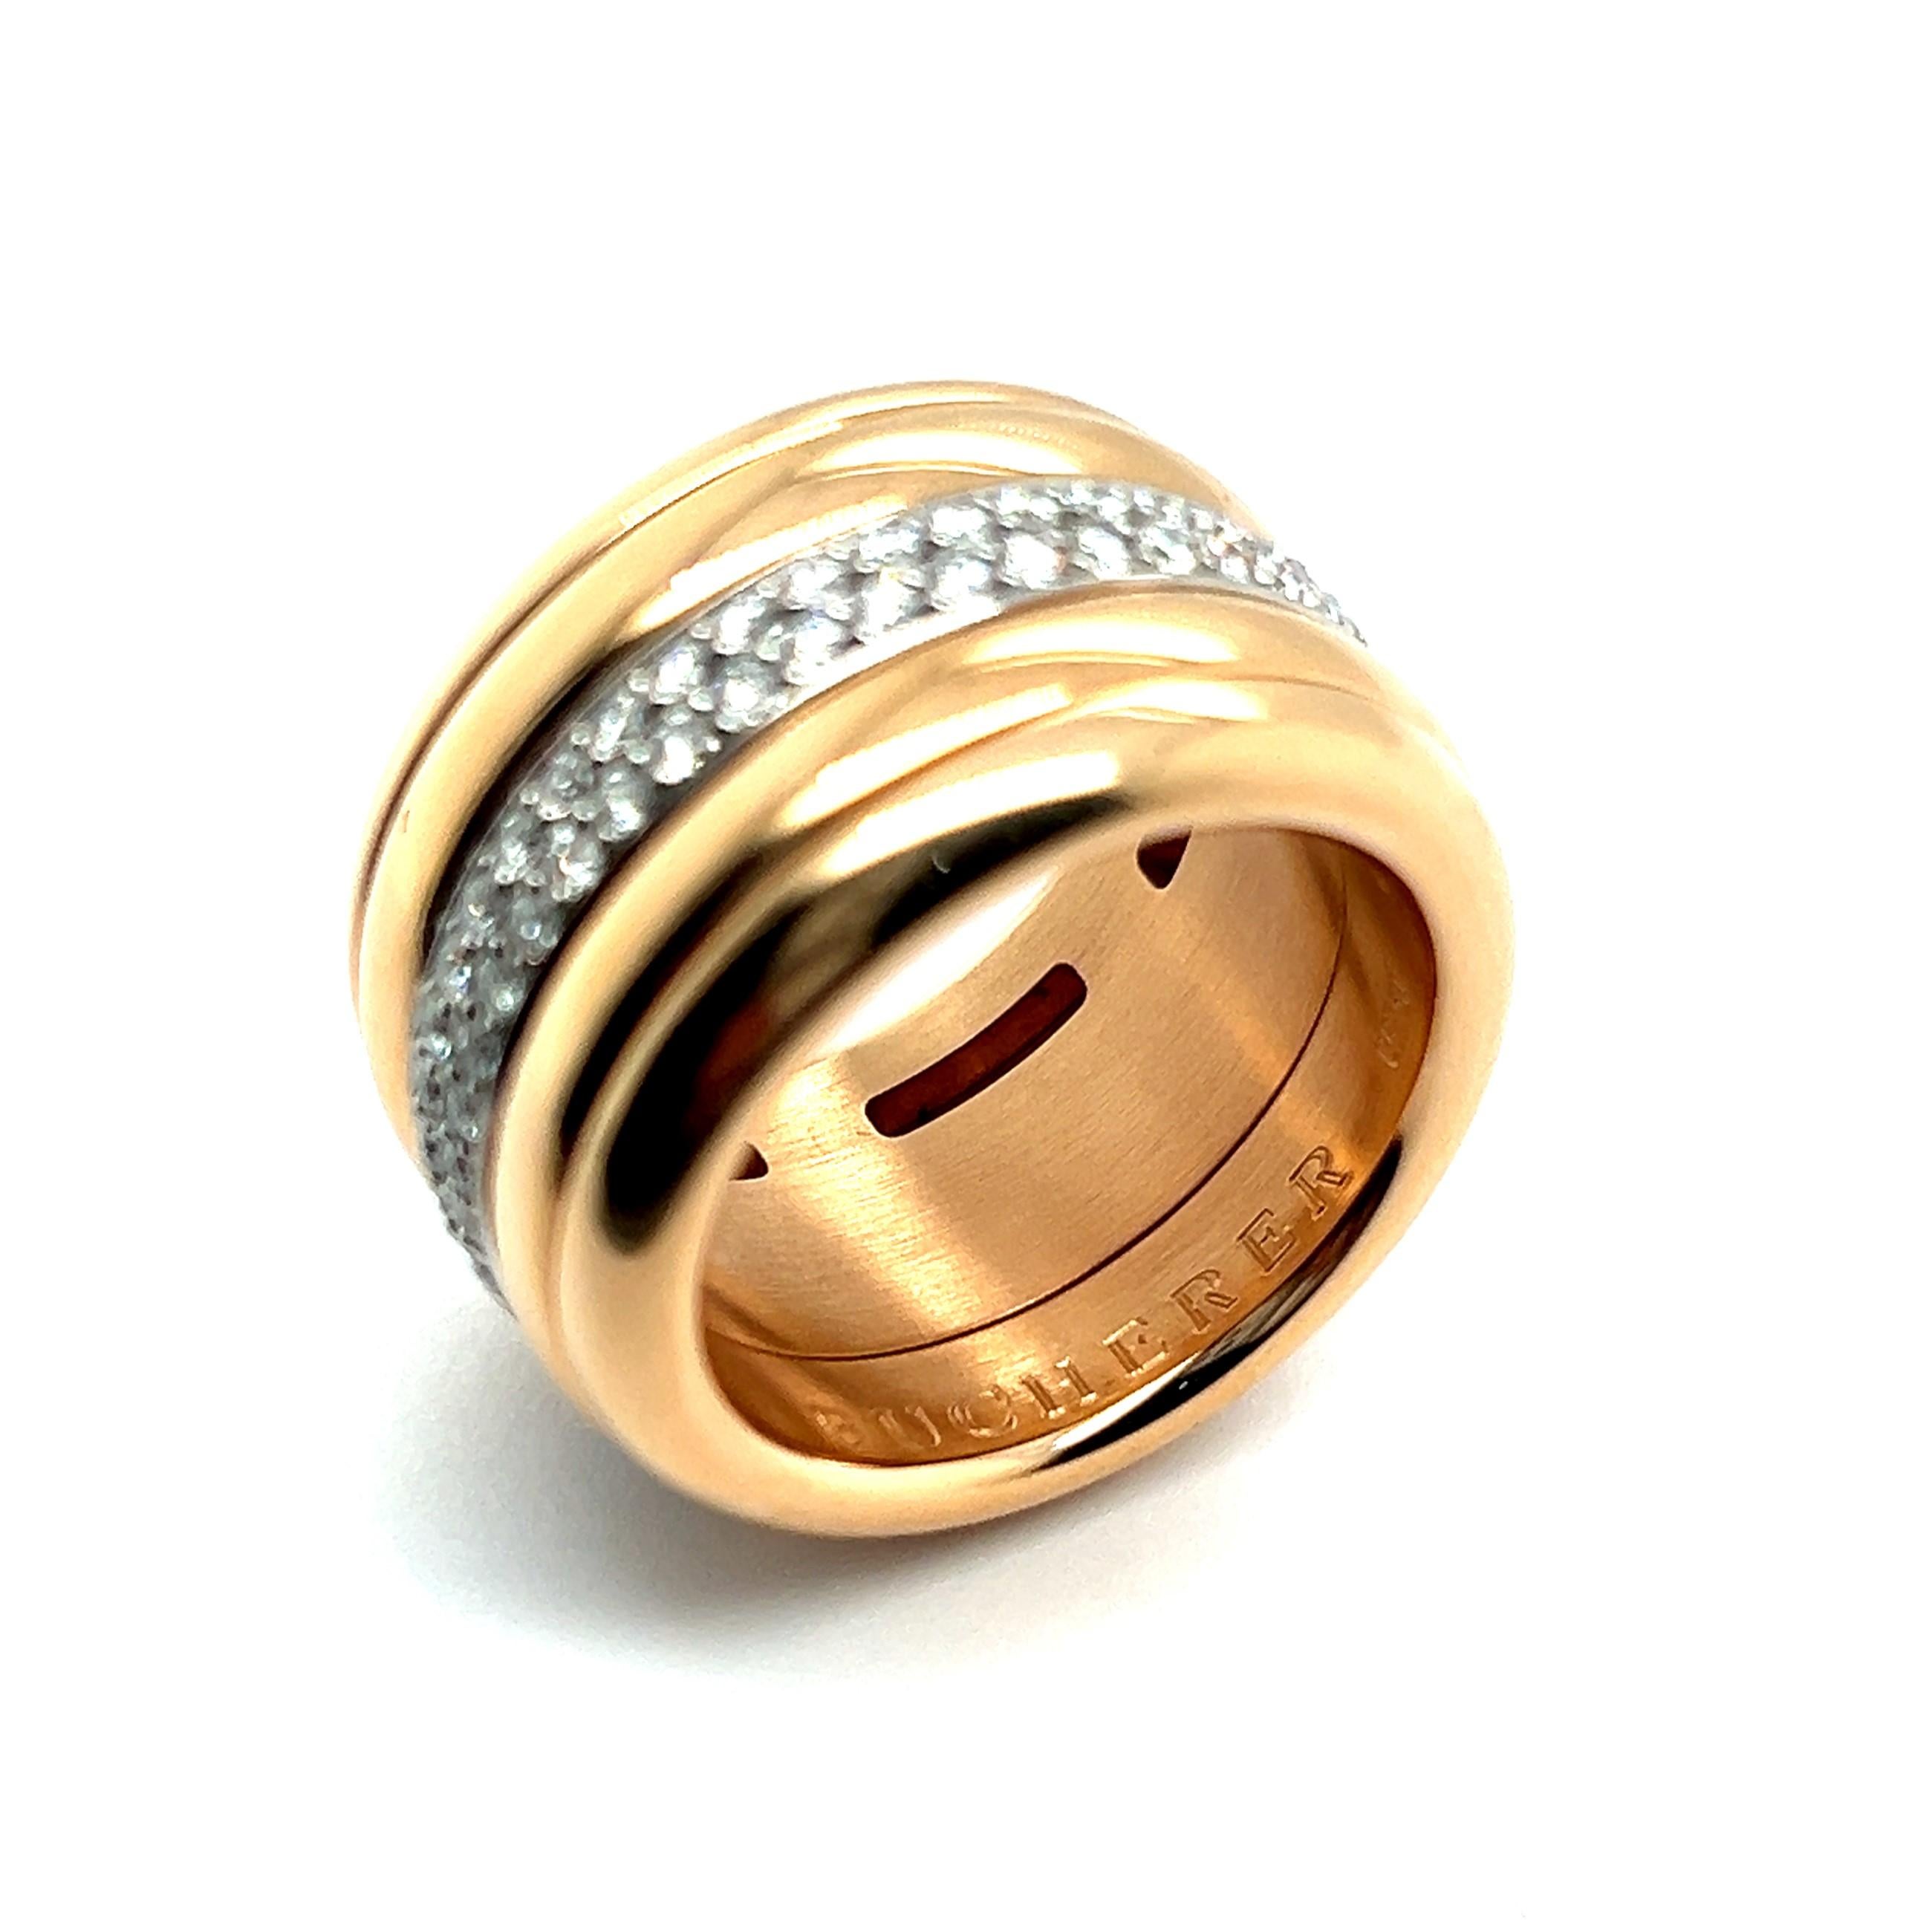 Dieser Ring von Bucherer ist aus exquisitem 18-karätigem Rot- und Weißgold gefertigt und zeichnet sich durch sein skurriles Design aus. Dieser 